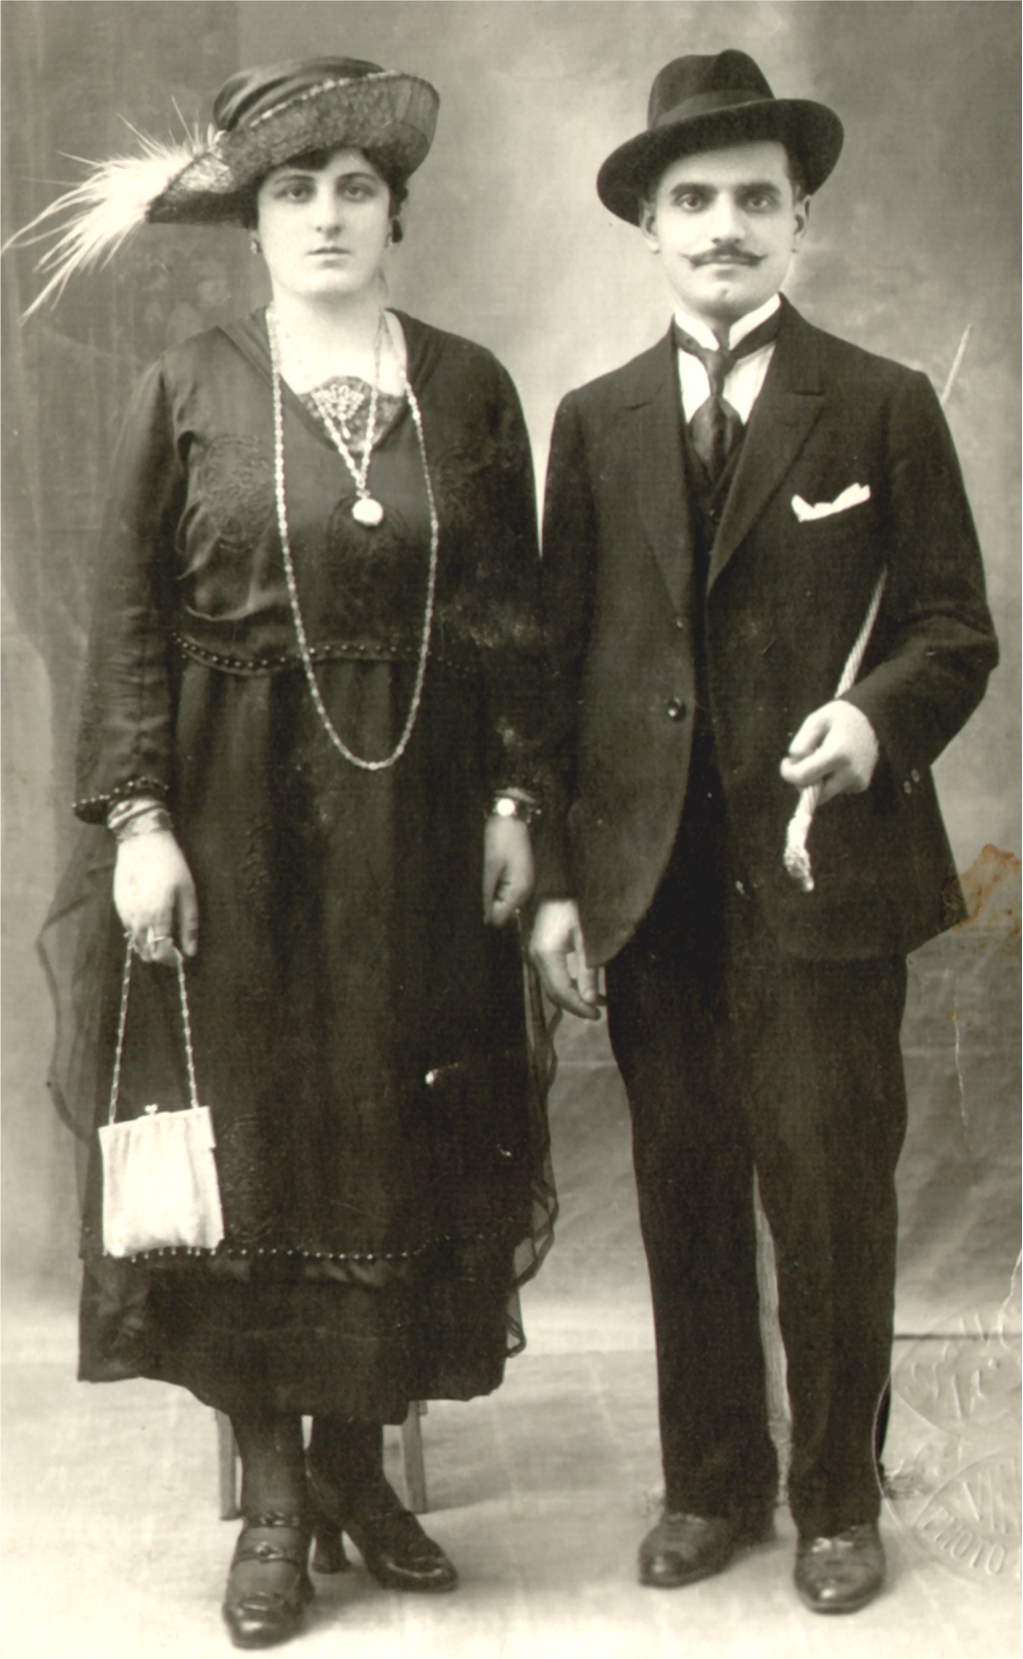 Պարոն Յակոբ Բալամուտեան եւ կինը՝ Հանըմ Ծուլիկեան, Կահիրէ, 1921 թ.։